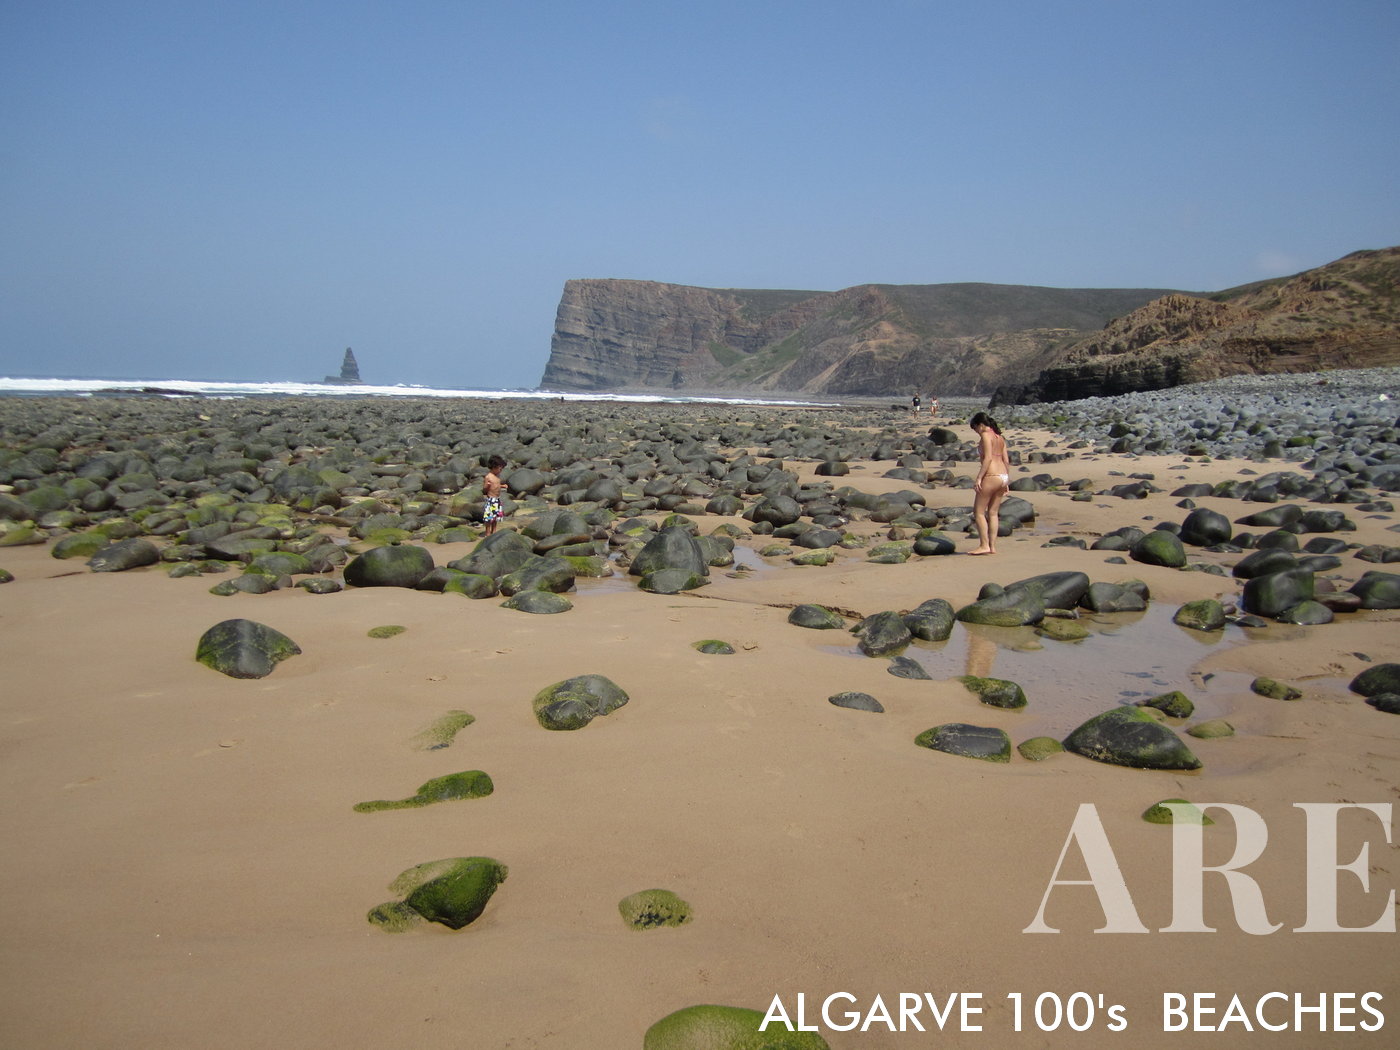 A Praia do Canal em Aljezur, no Algarve, apresenta um panorama encantador de pequenas rochas, ondas ritmadas e o vasto oceano, culminando na silhueta distinta da Ponta da Agulha no horizonte.